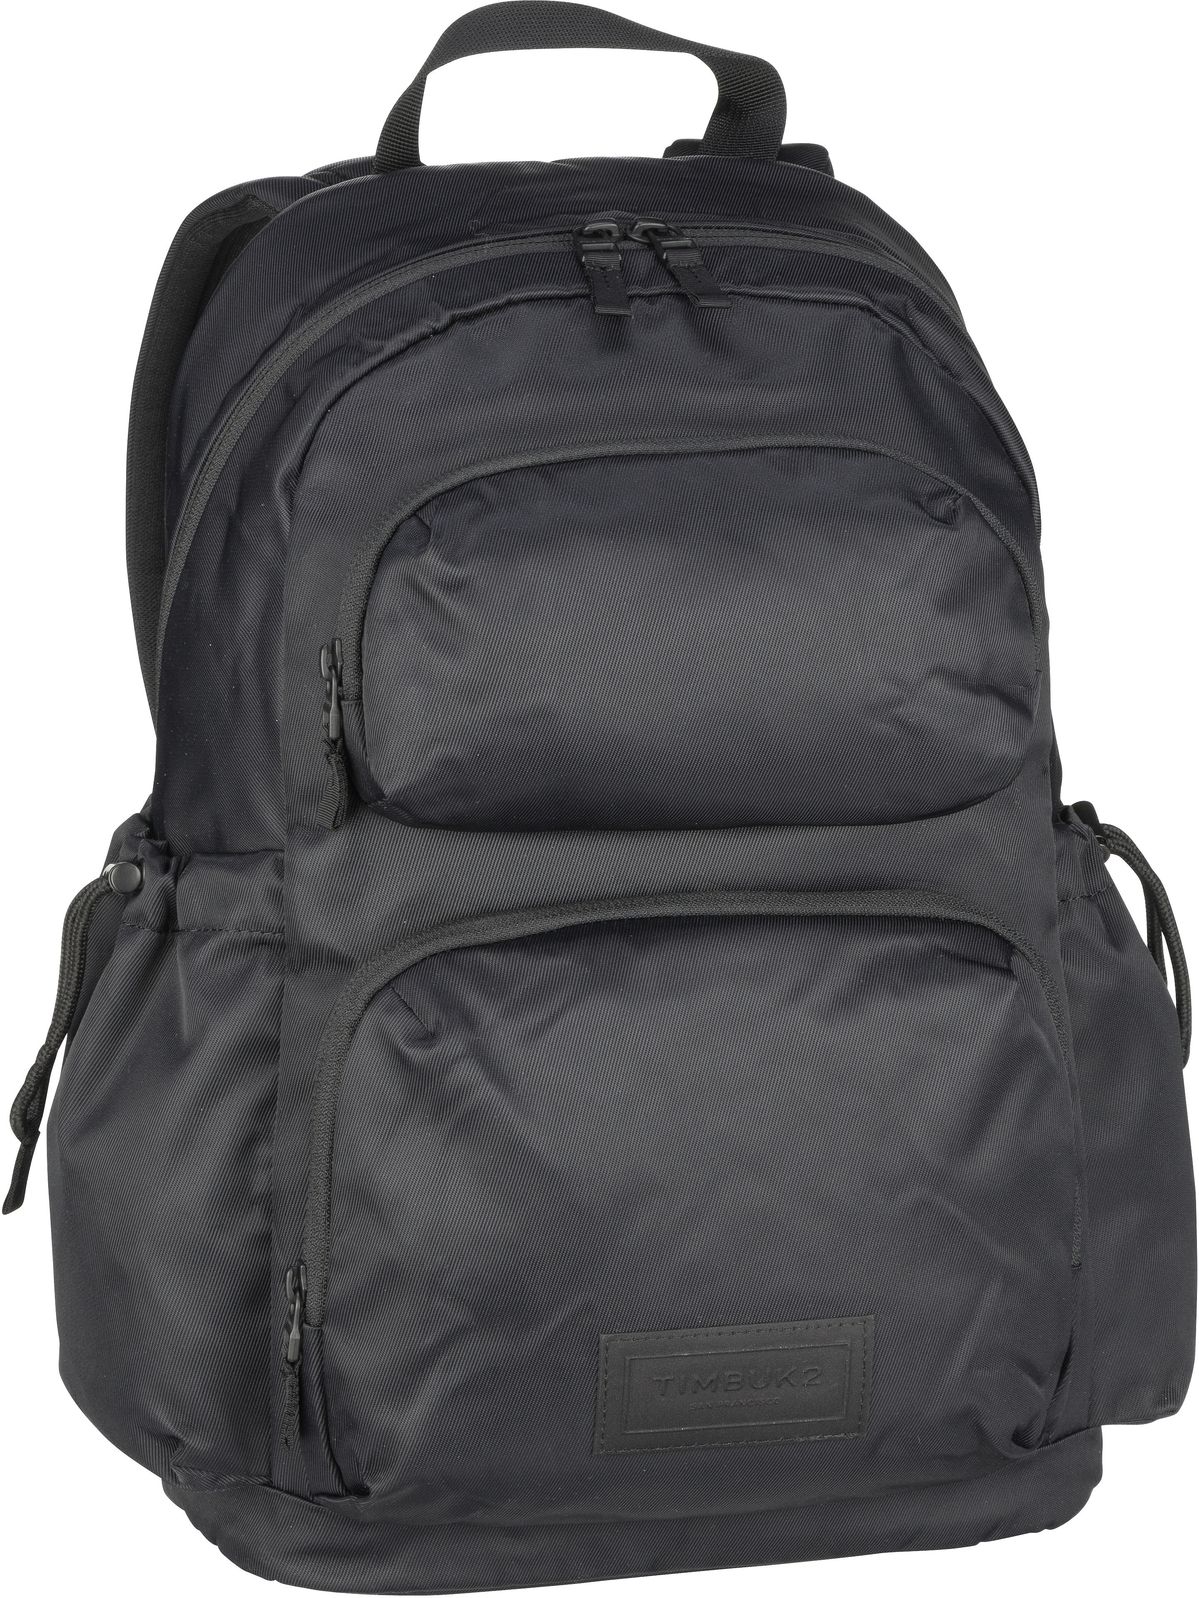 Timbuk2 Vapor Backpack - Jet Black